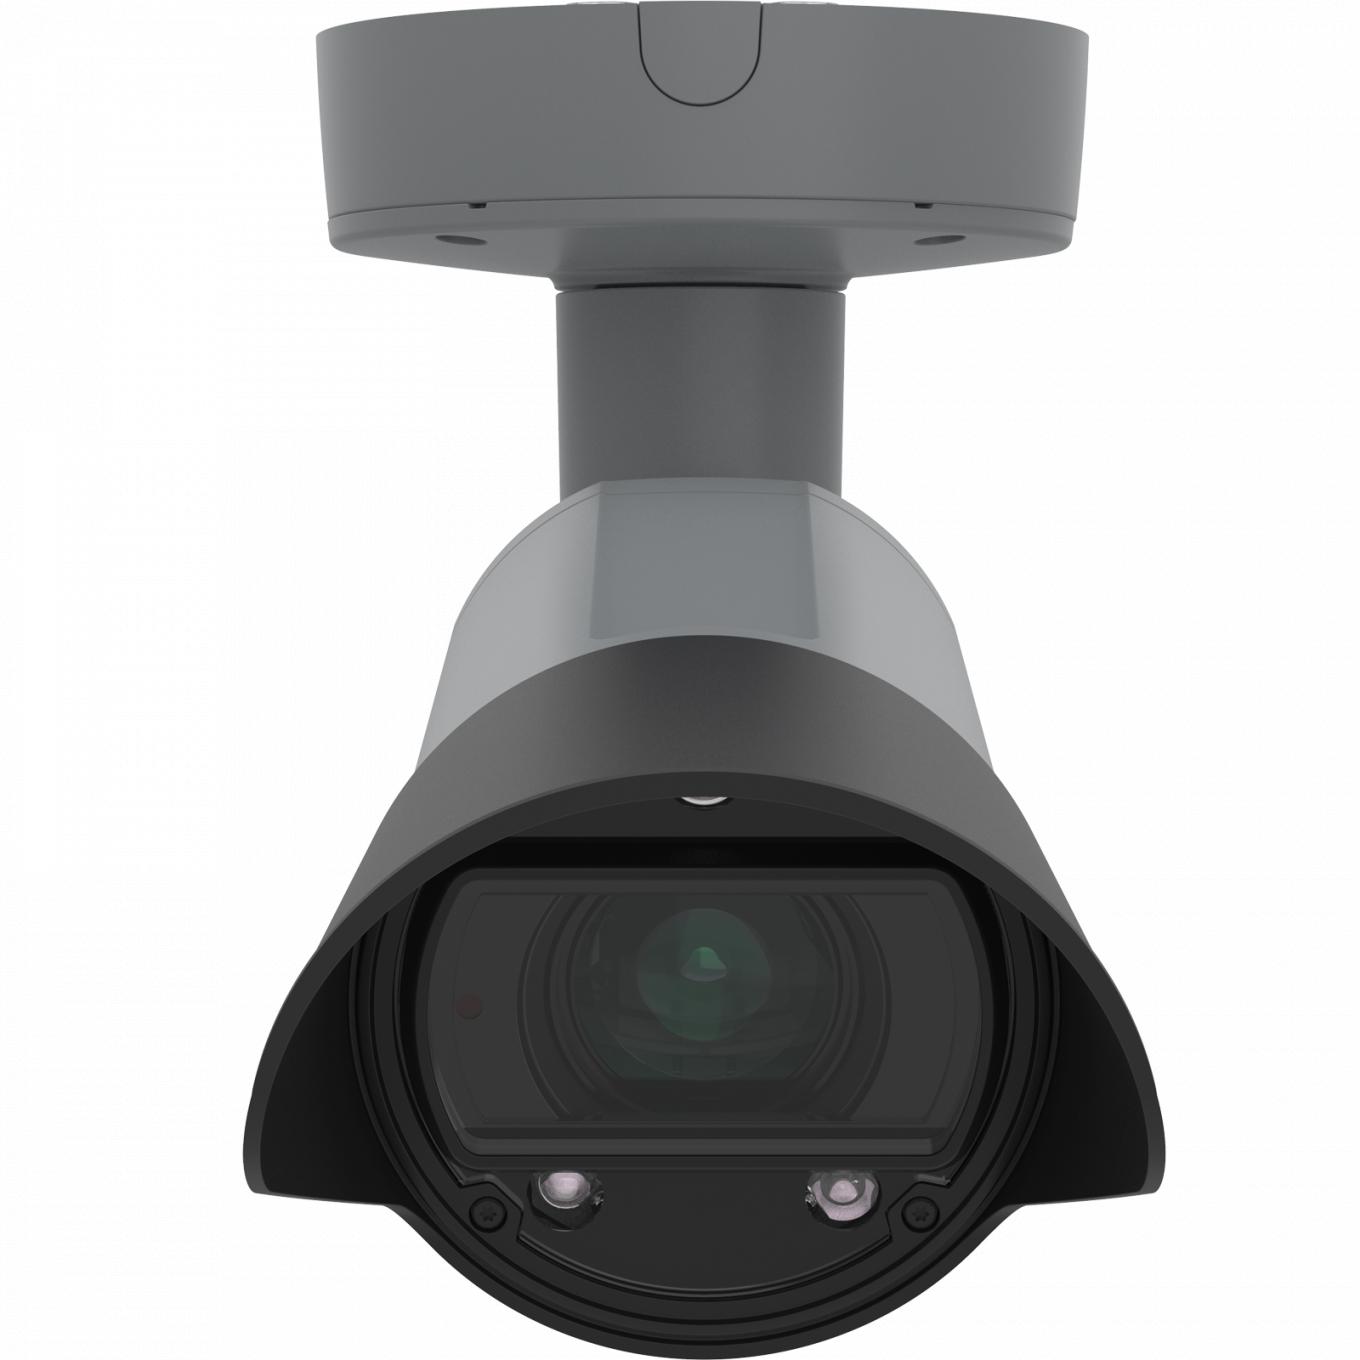 AXIS Q1700-LE License Plate Camera, montada en el techo y vista desde el frente.